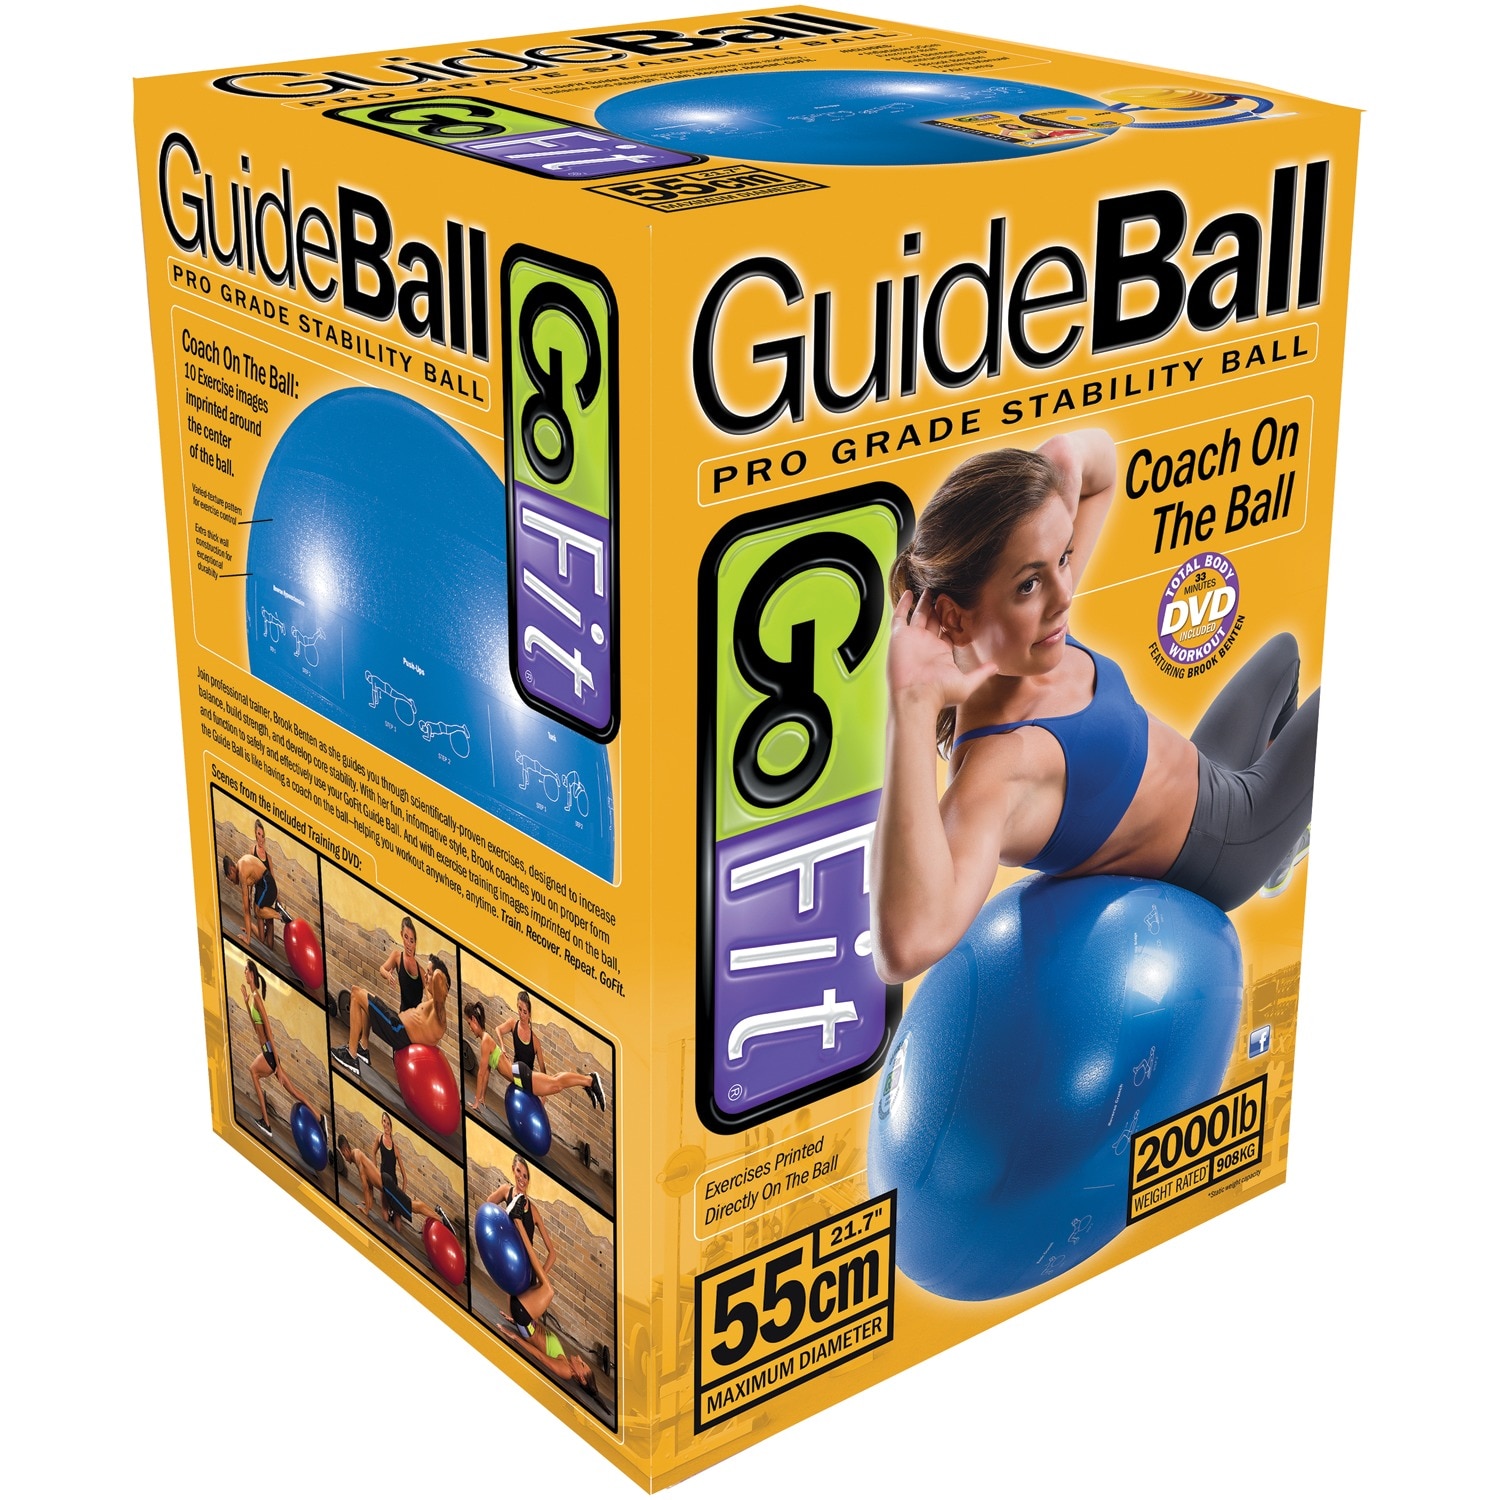 Gym Ball w/ Pump- 55cm